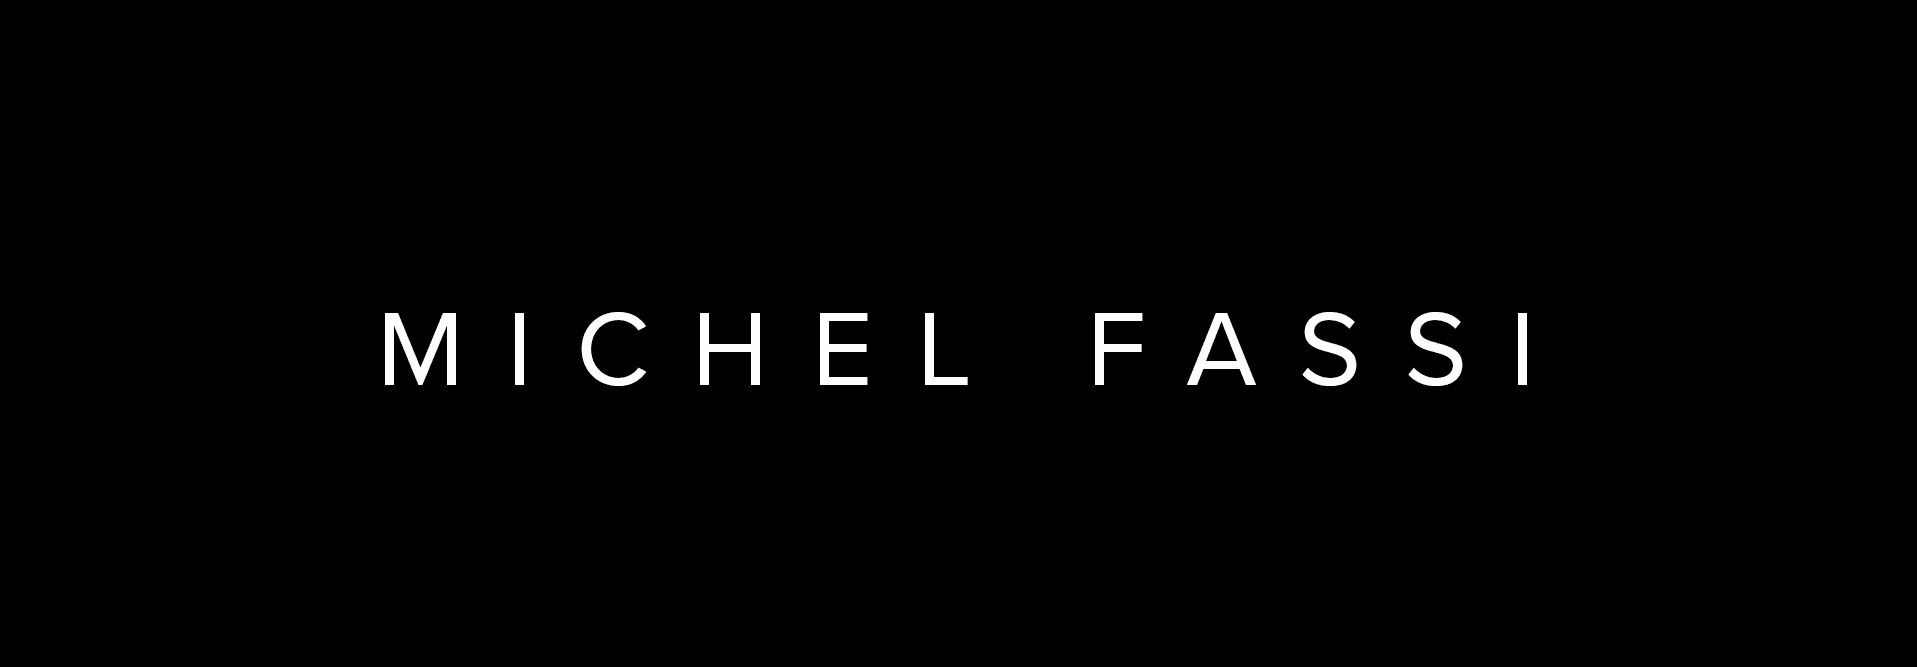 MichelFassi banner